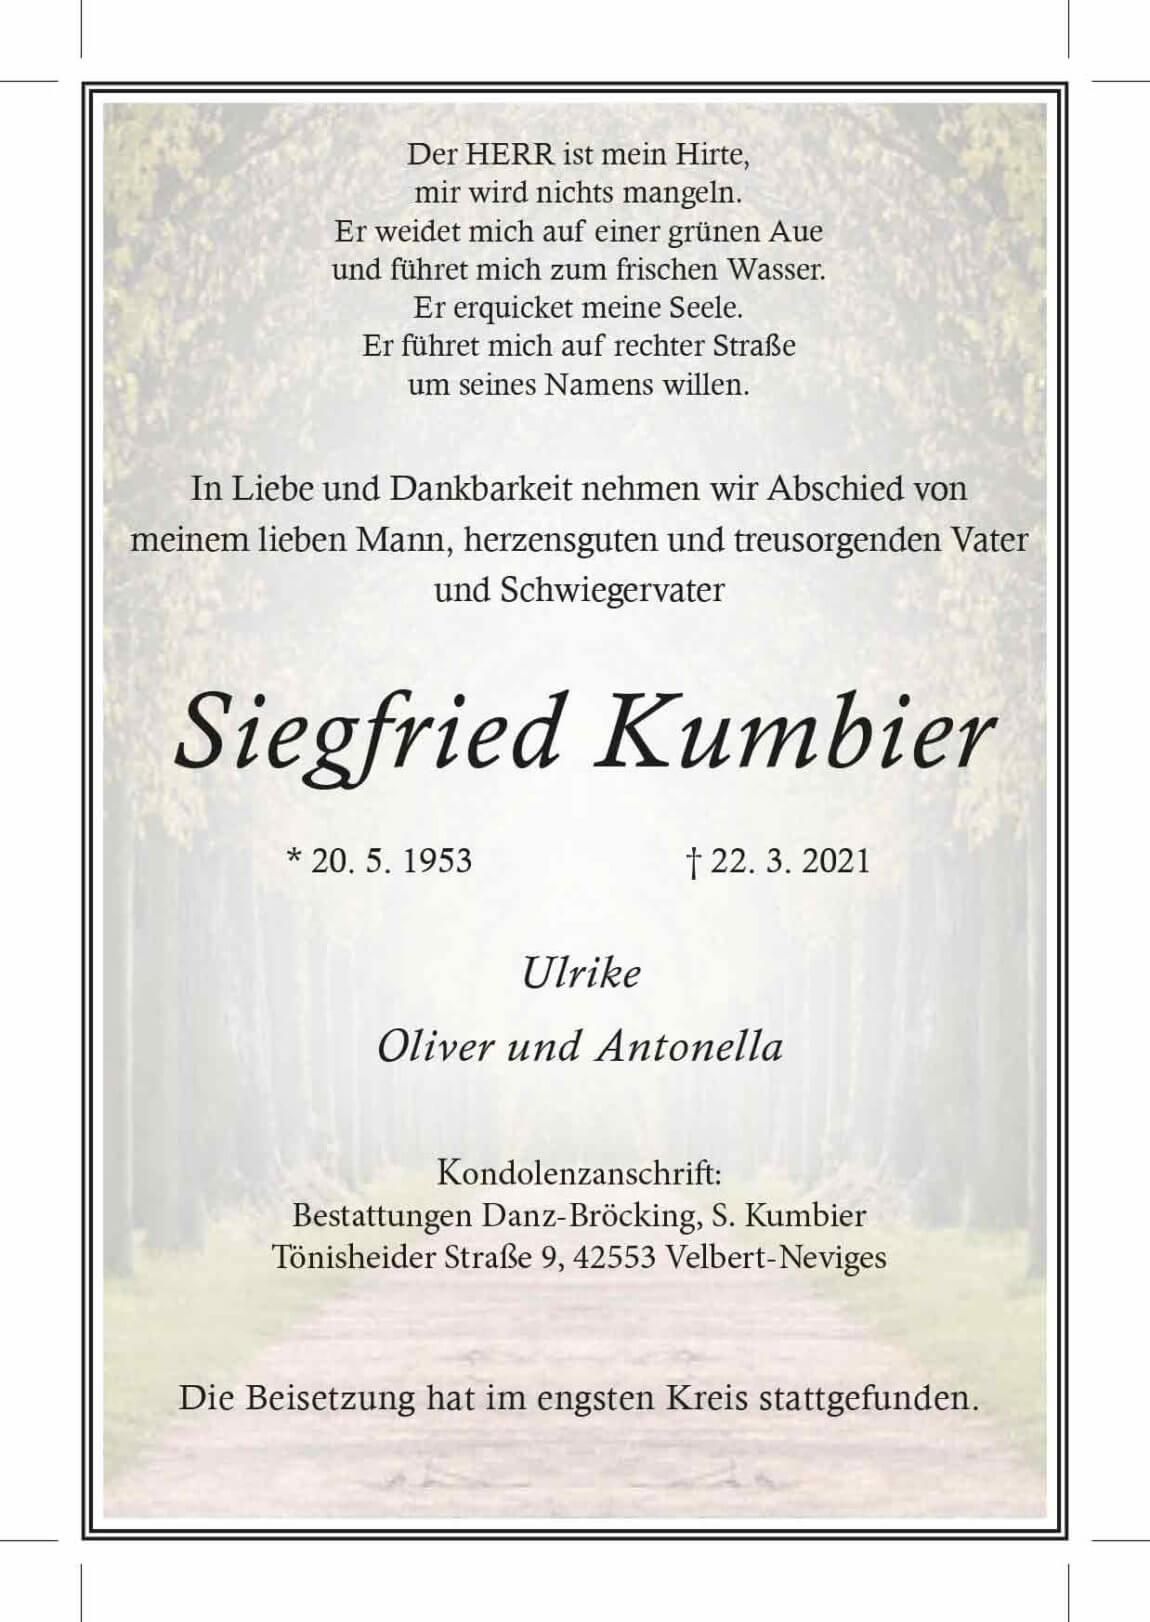 17.04.2021_Kumbier-Siegfried.jpg